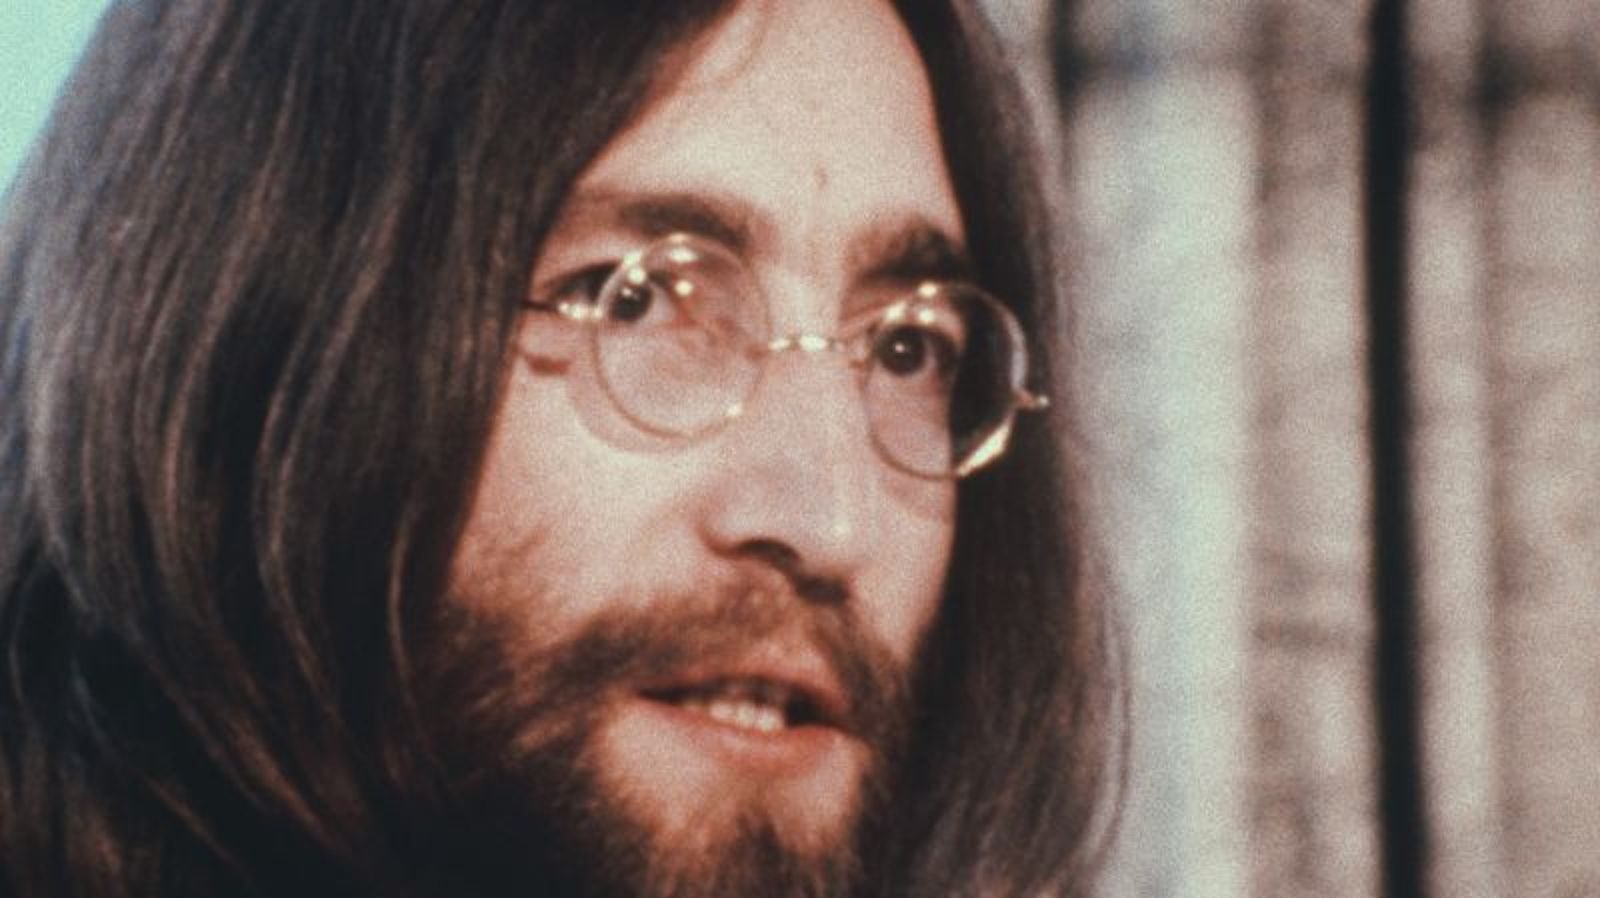 ANÁLISIS | “John Lennon: Asesinato sin juicio” no le hace justicia al ícono de la música